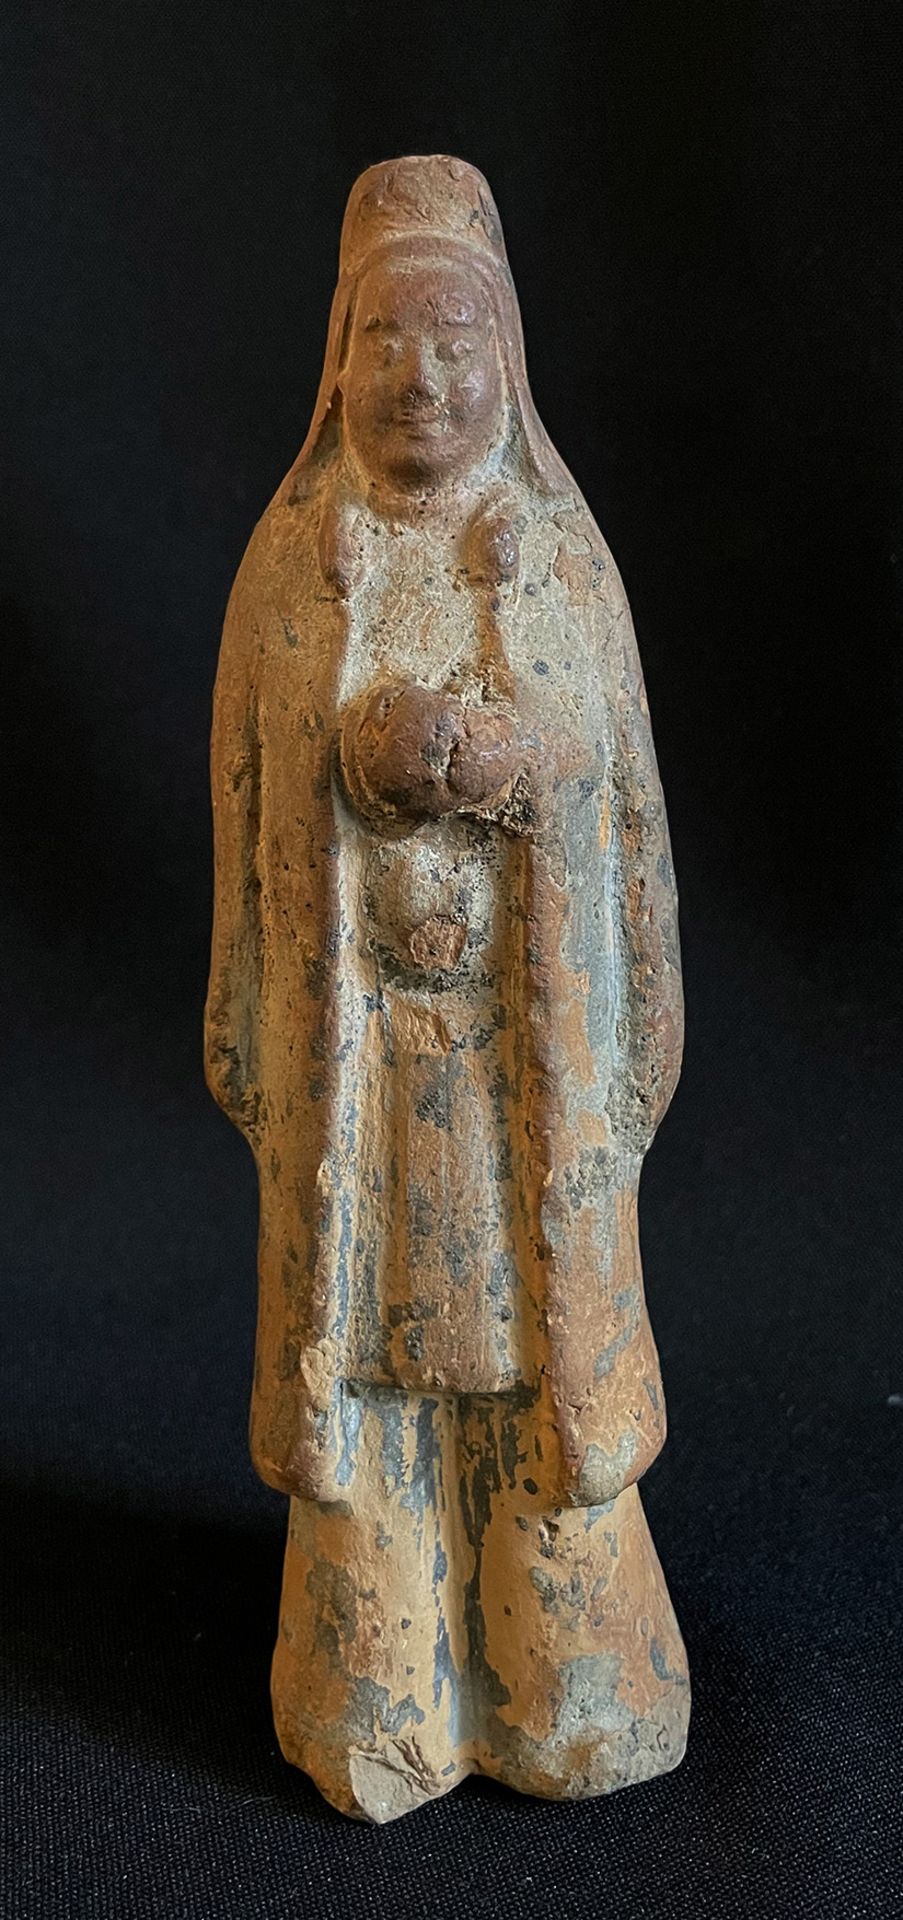 China, Han-Dynastie (206 vor - 220 nach Christus) ?, Hofwächter, Terracotta, mit Resten farbiger